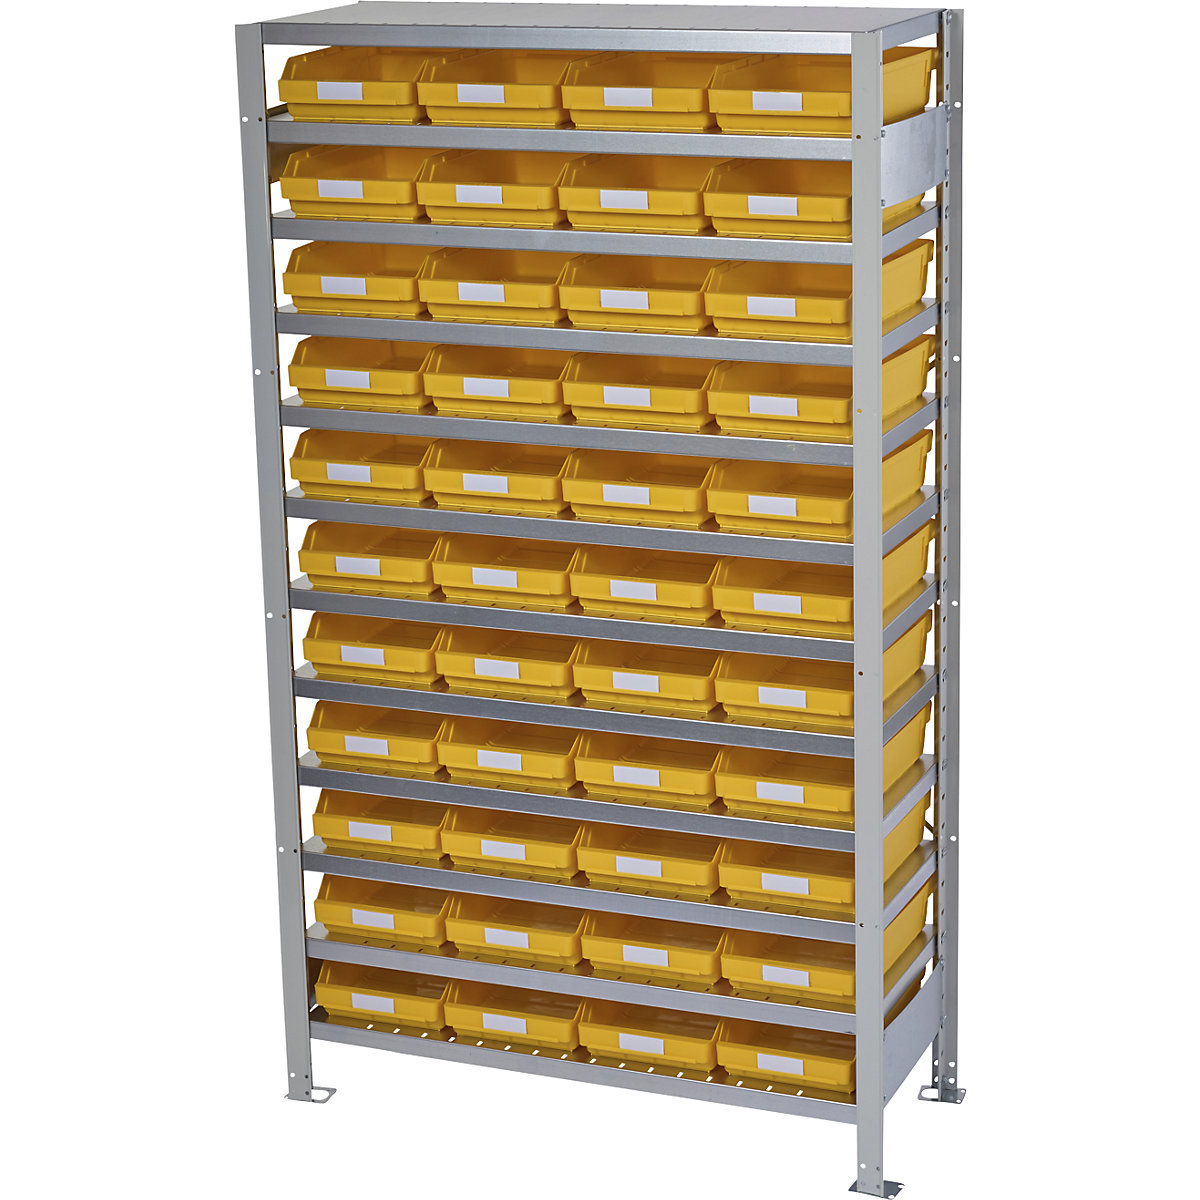 Zásuvný regál s regálovými přepravkami – STEMO, výška regálu 1790 mm, základní regál, hloubka 500 mm, 44 přepravek žlutých-37